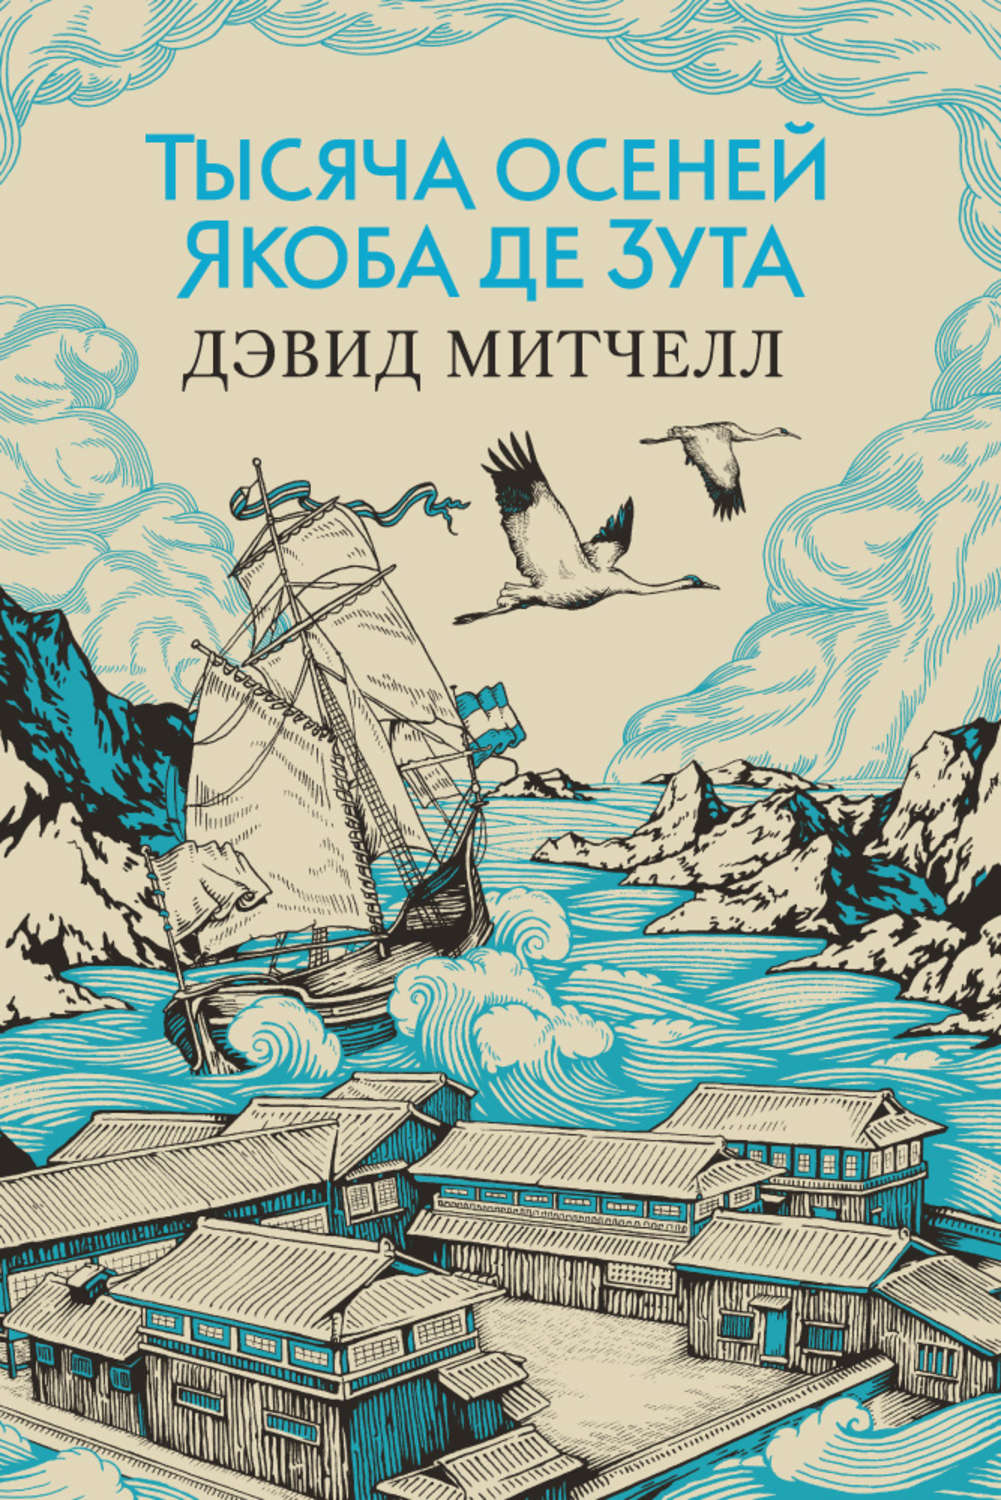 Книга облачный атлас на русском скачать